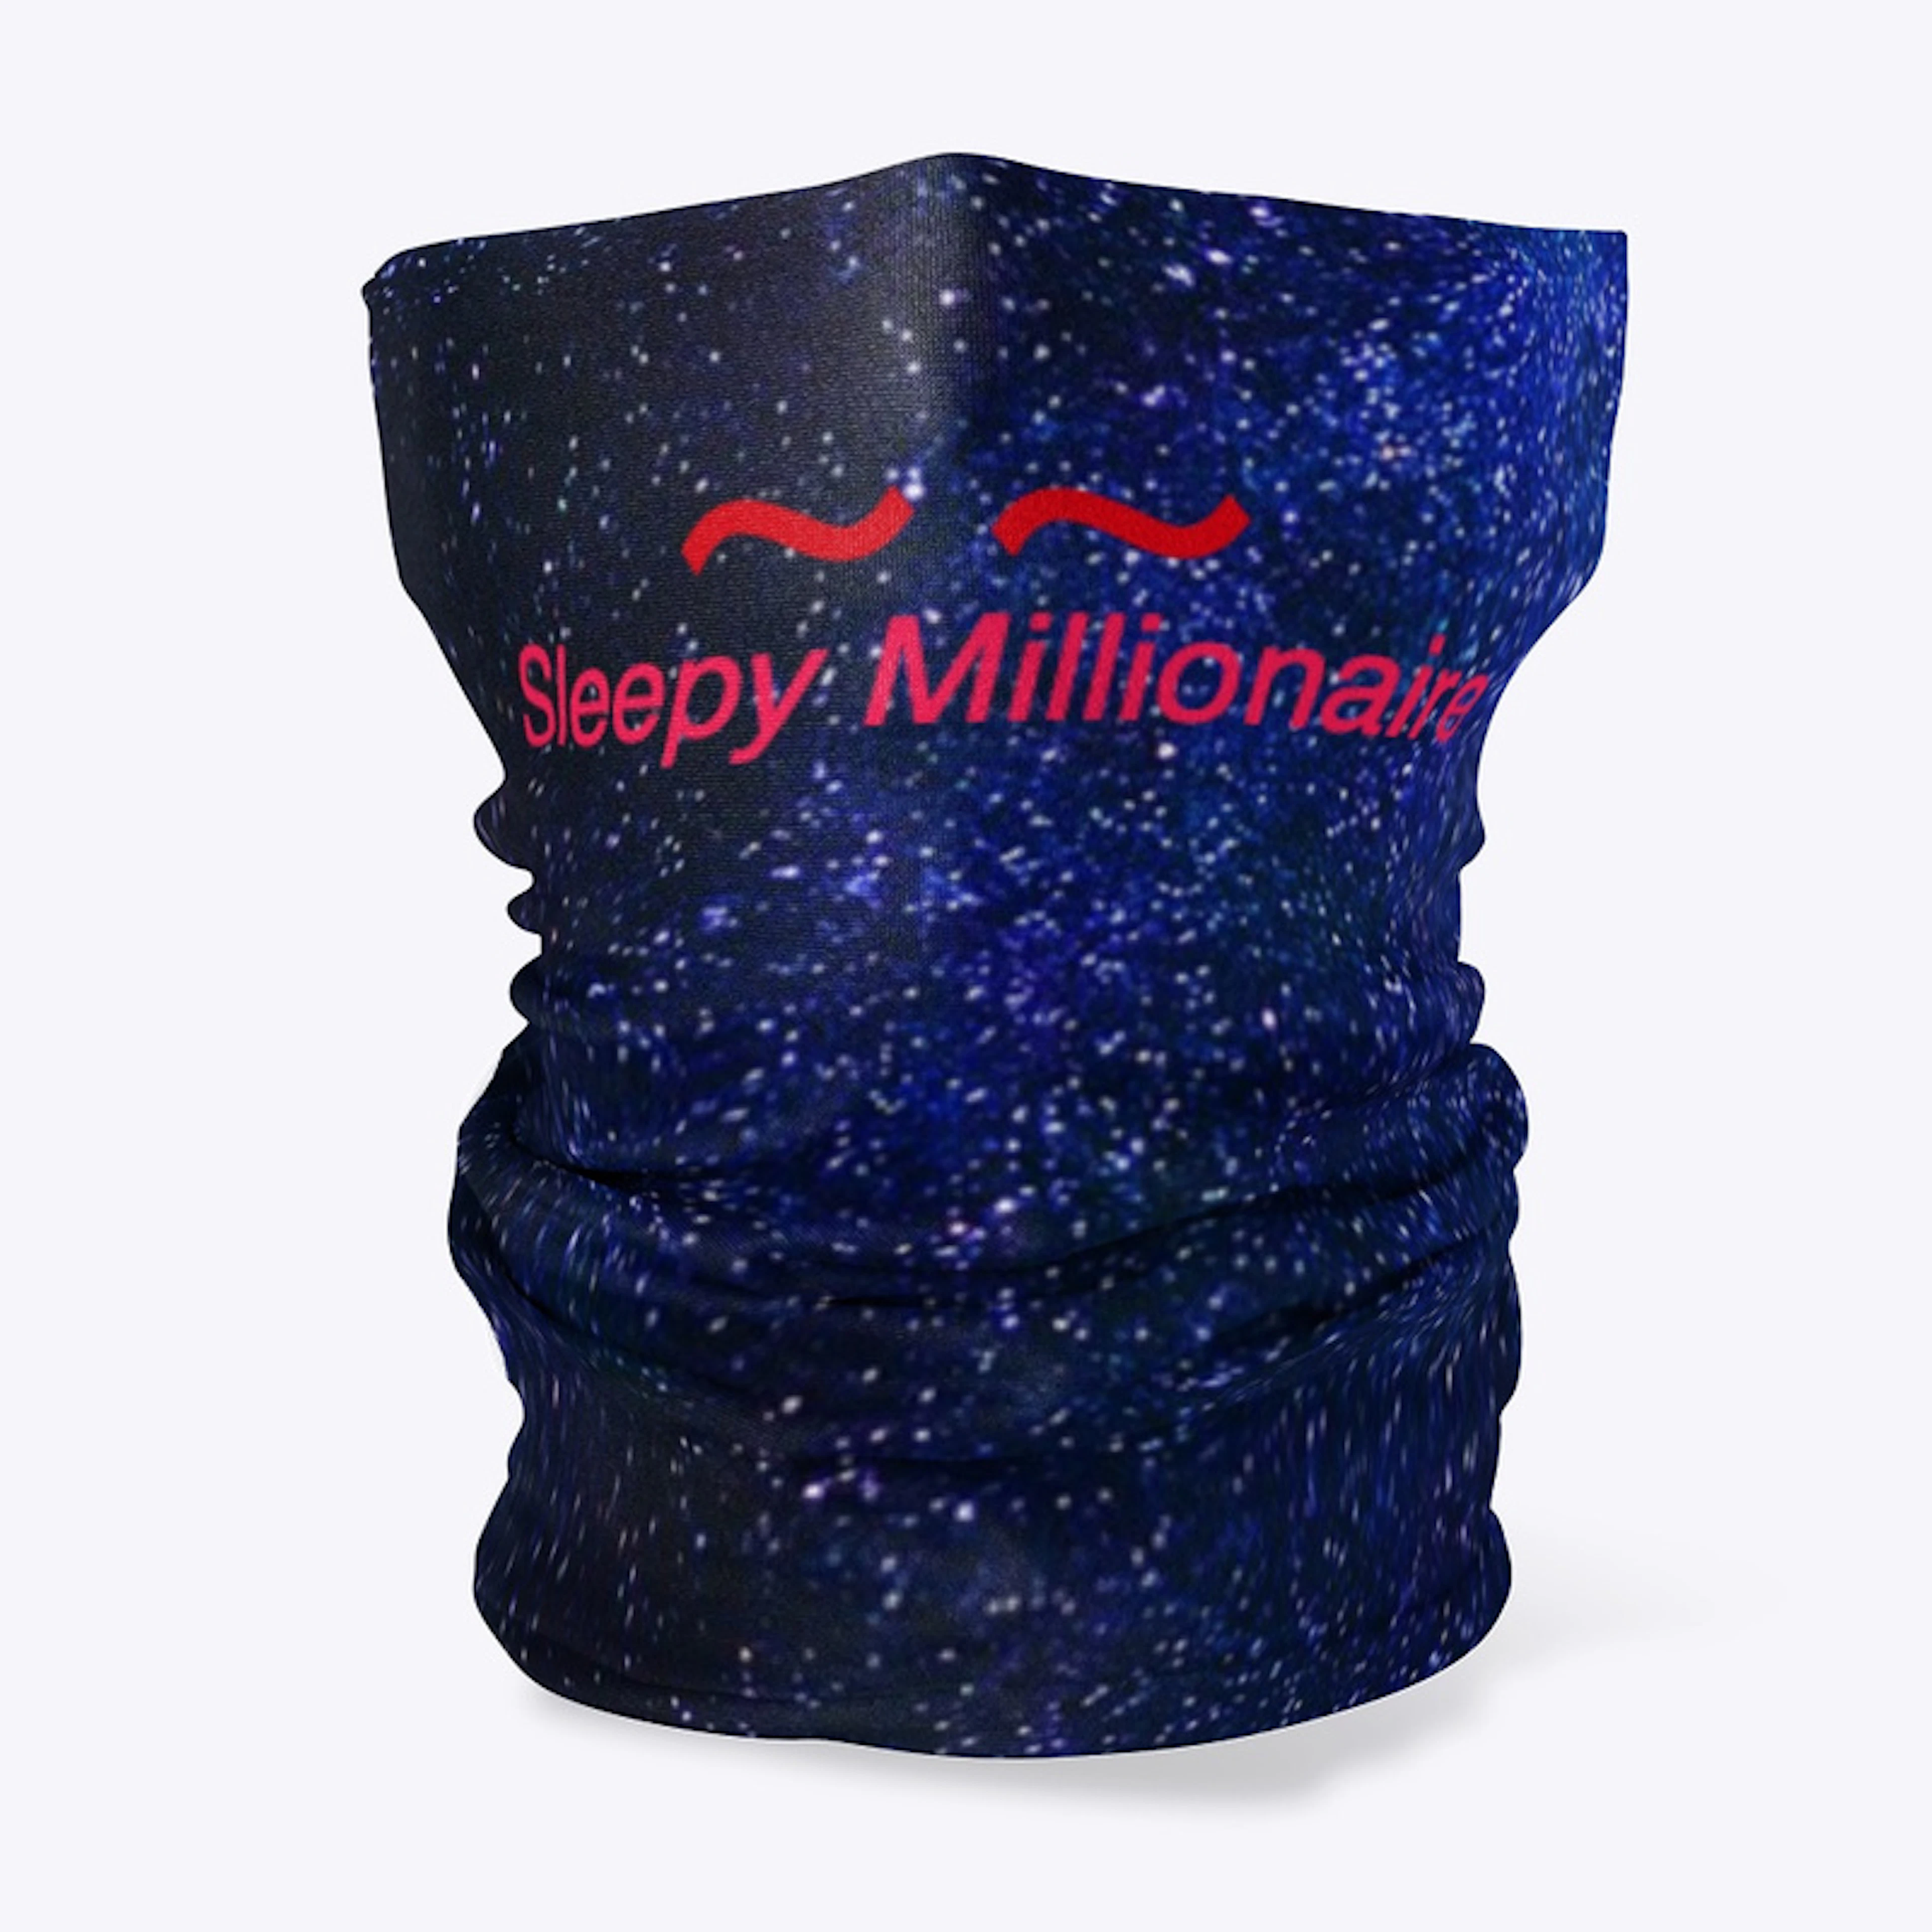 Sleepy Millionaire face mask